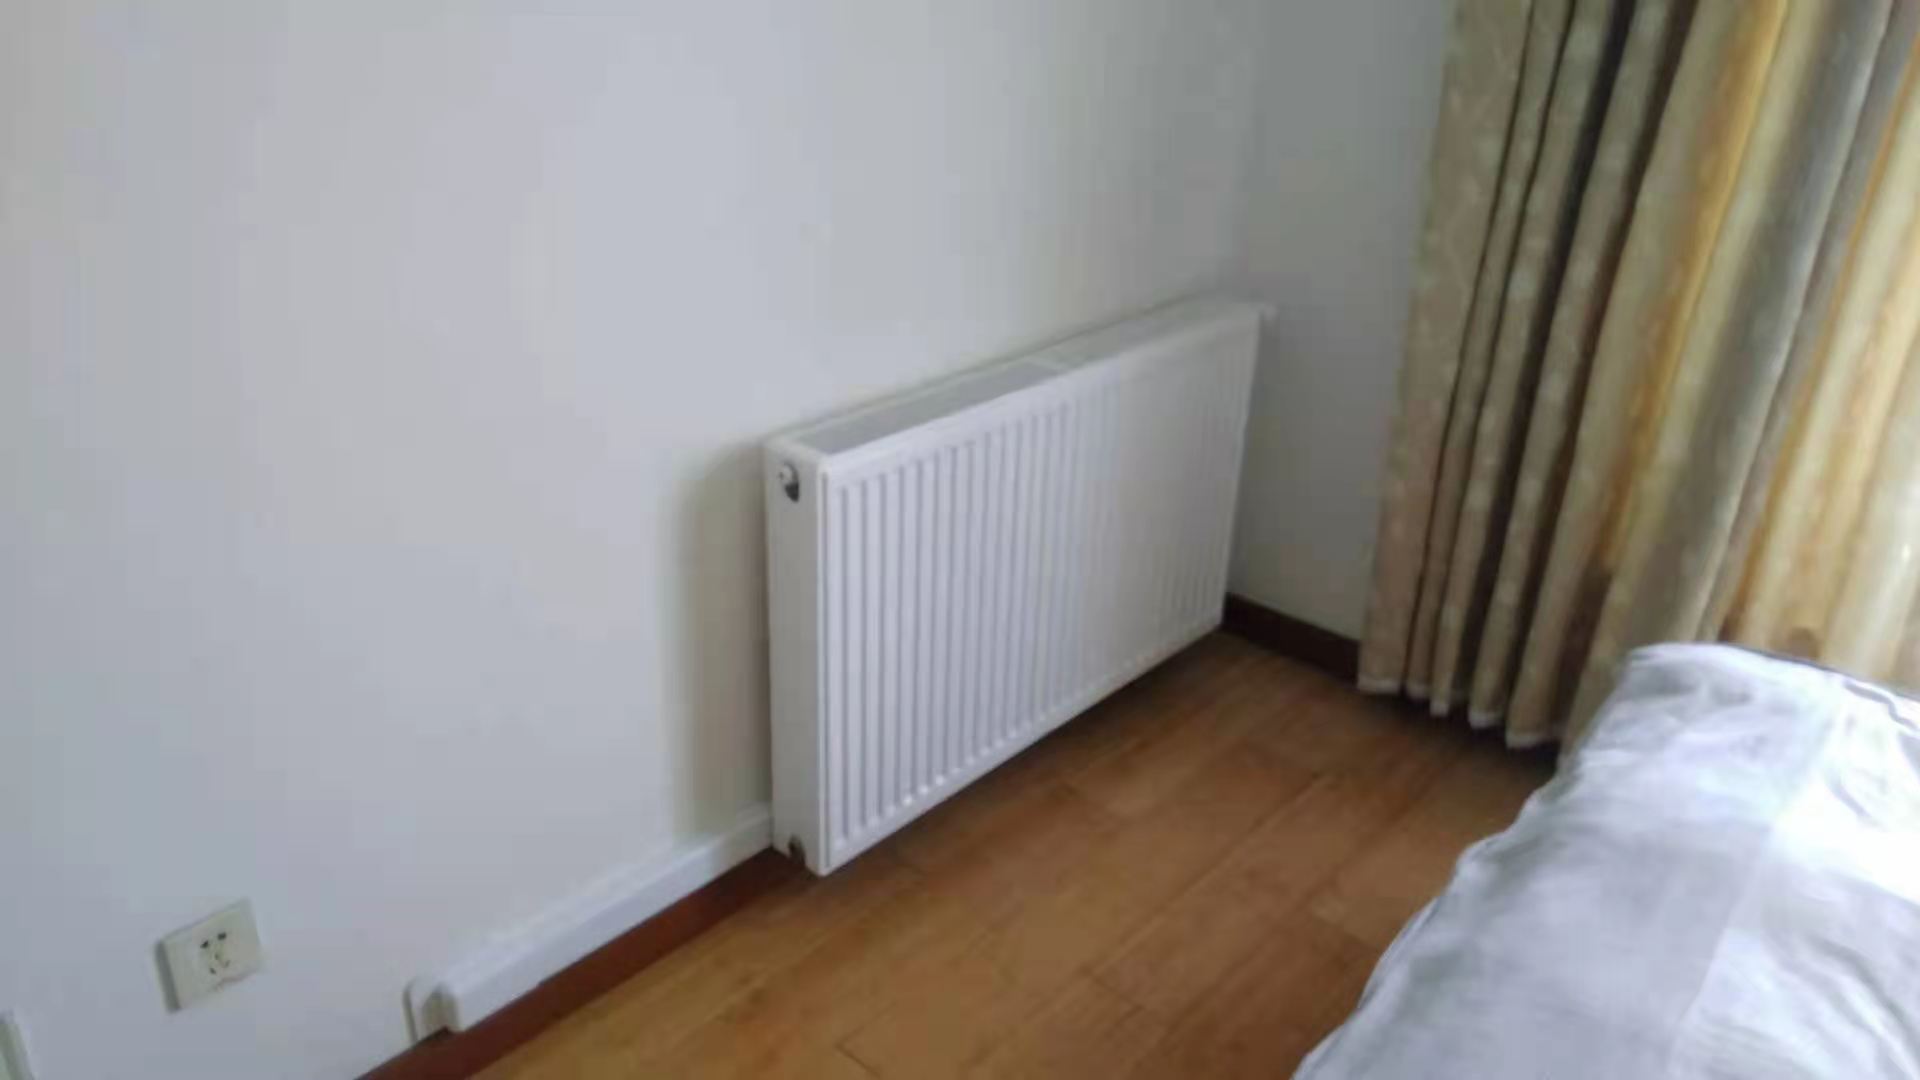 已装修好的房子如何安装暖气片